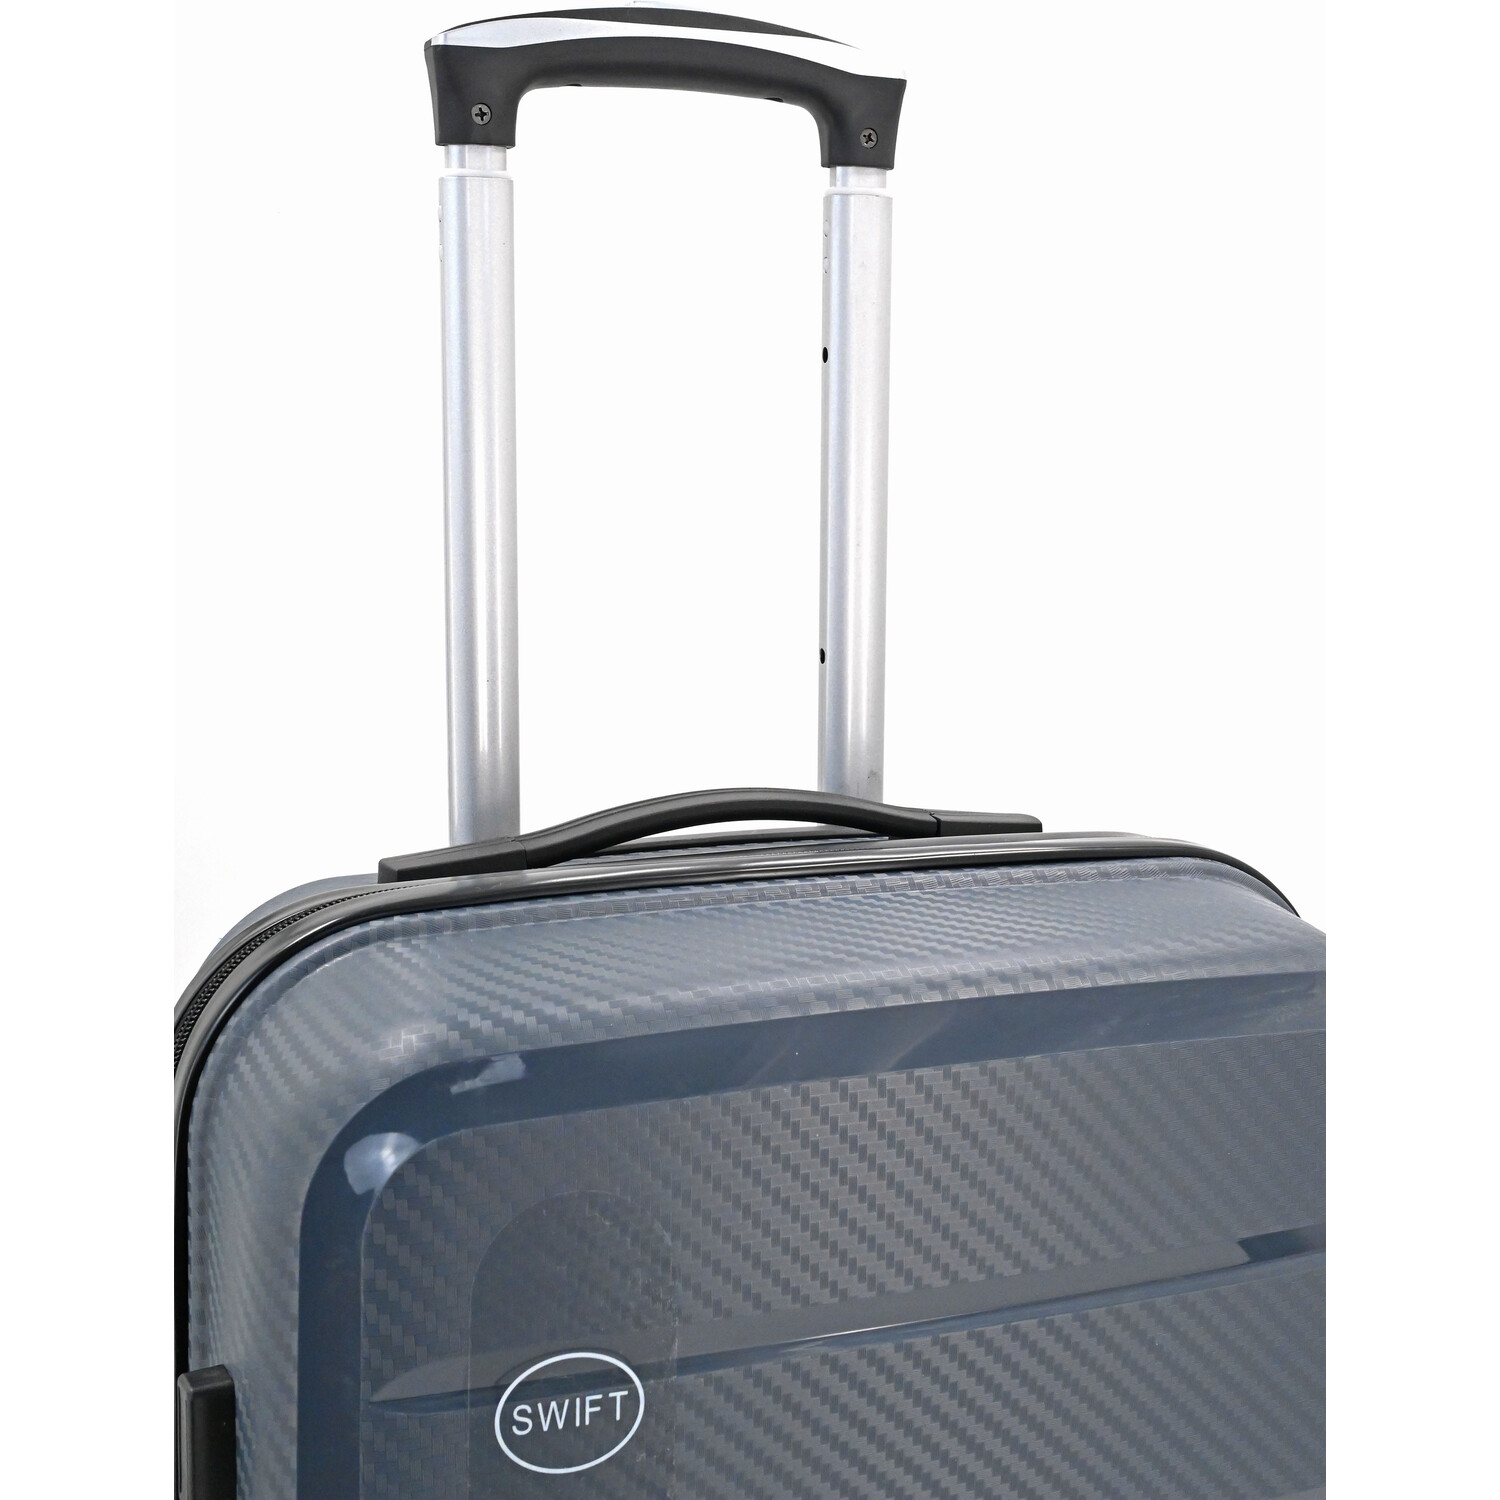 Swift Discovery Luggage Case - Grey / Large Case Image 4